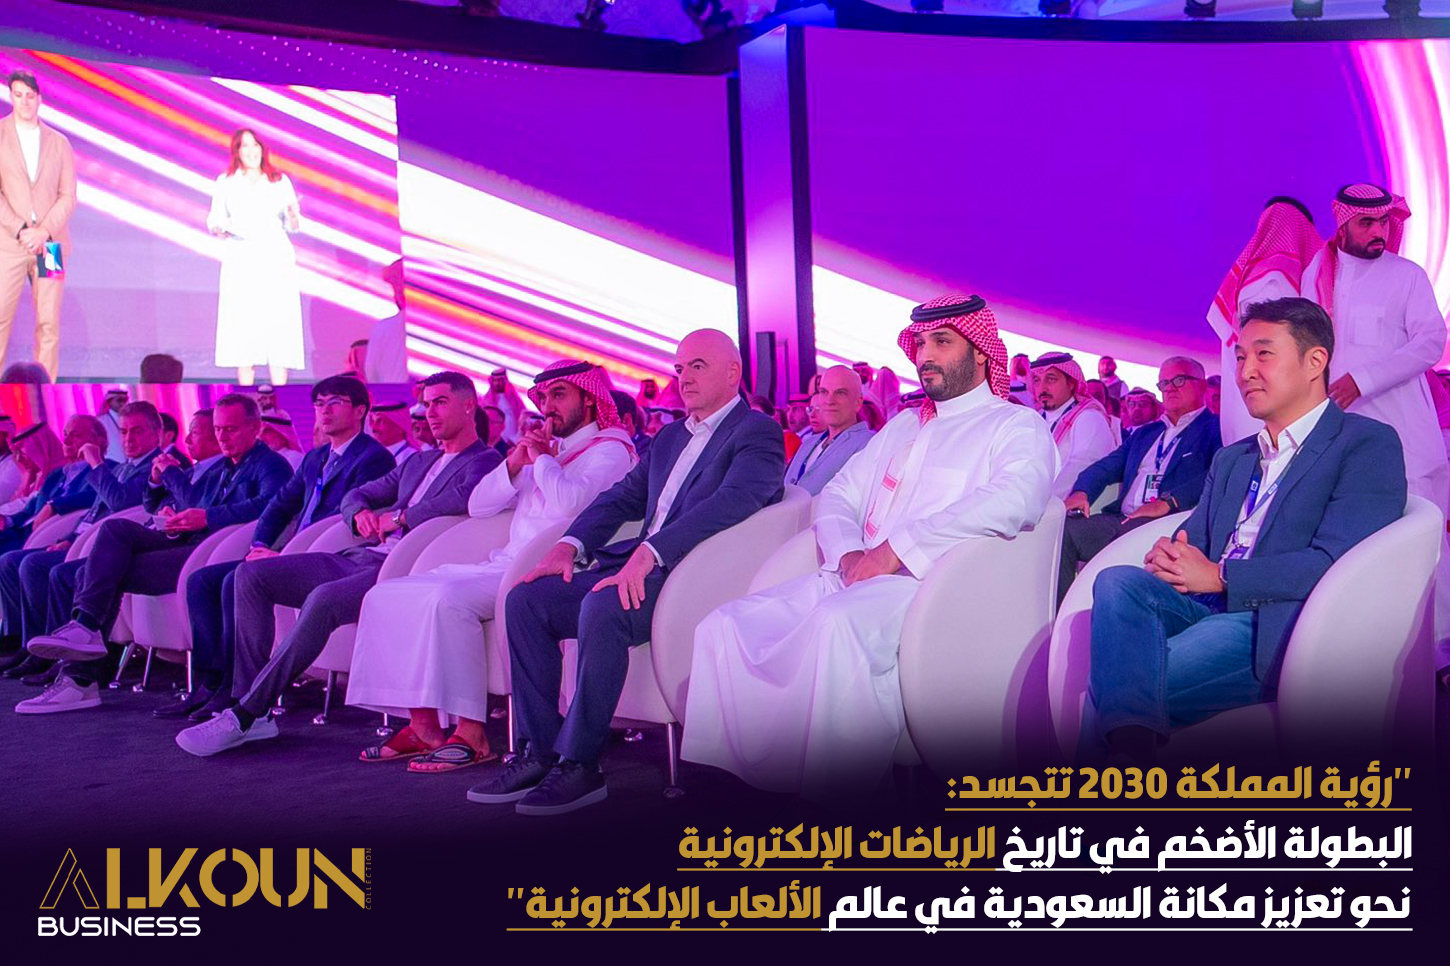 "رؤية المملكة 2030 تتجسد: البطولة الأضخم في تاريخ الرياضات الإلكترونية نحو تعزيز مكانة السعودية في عالم الألعاب الإلكترونية"